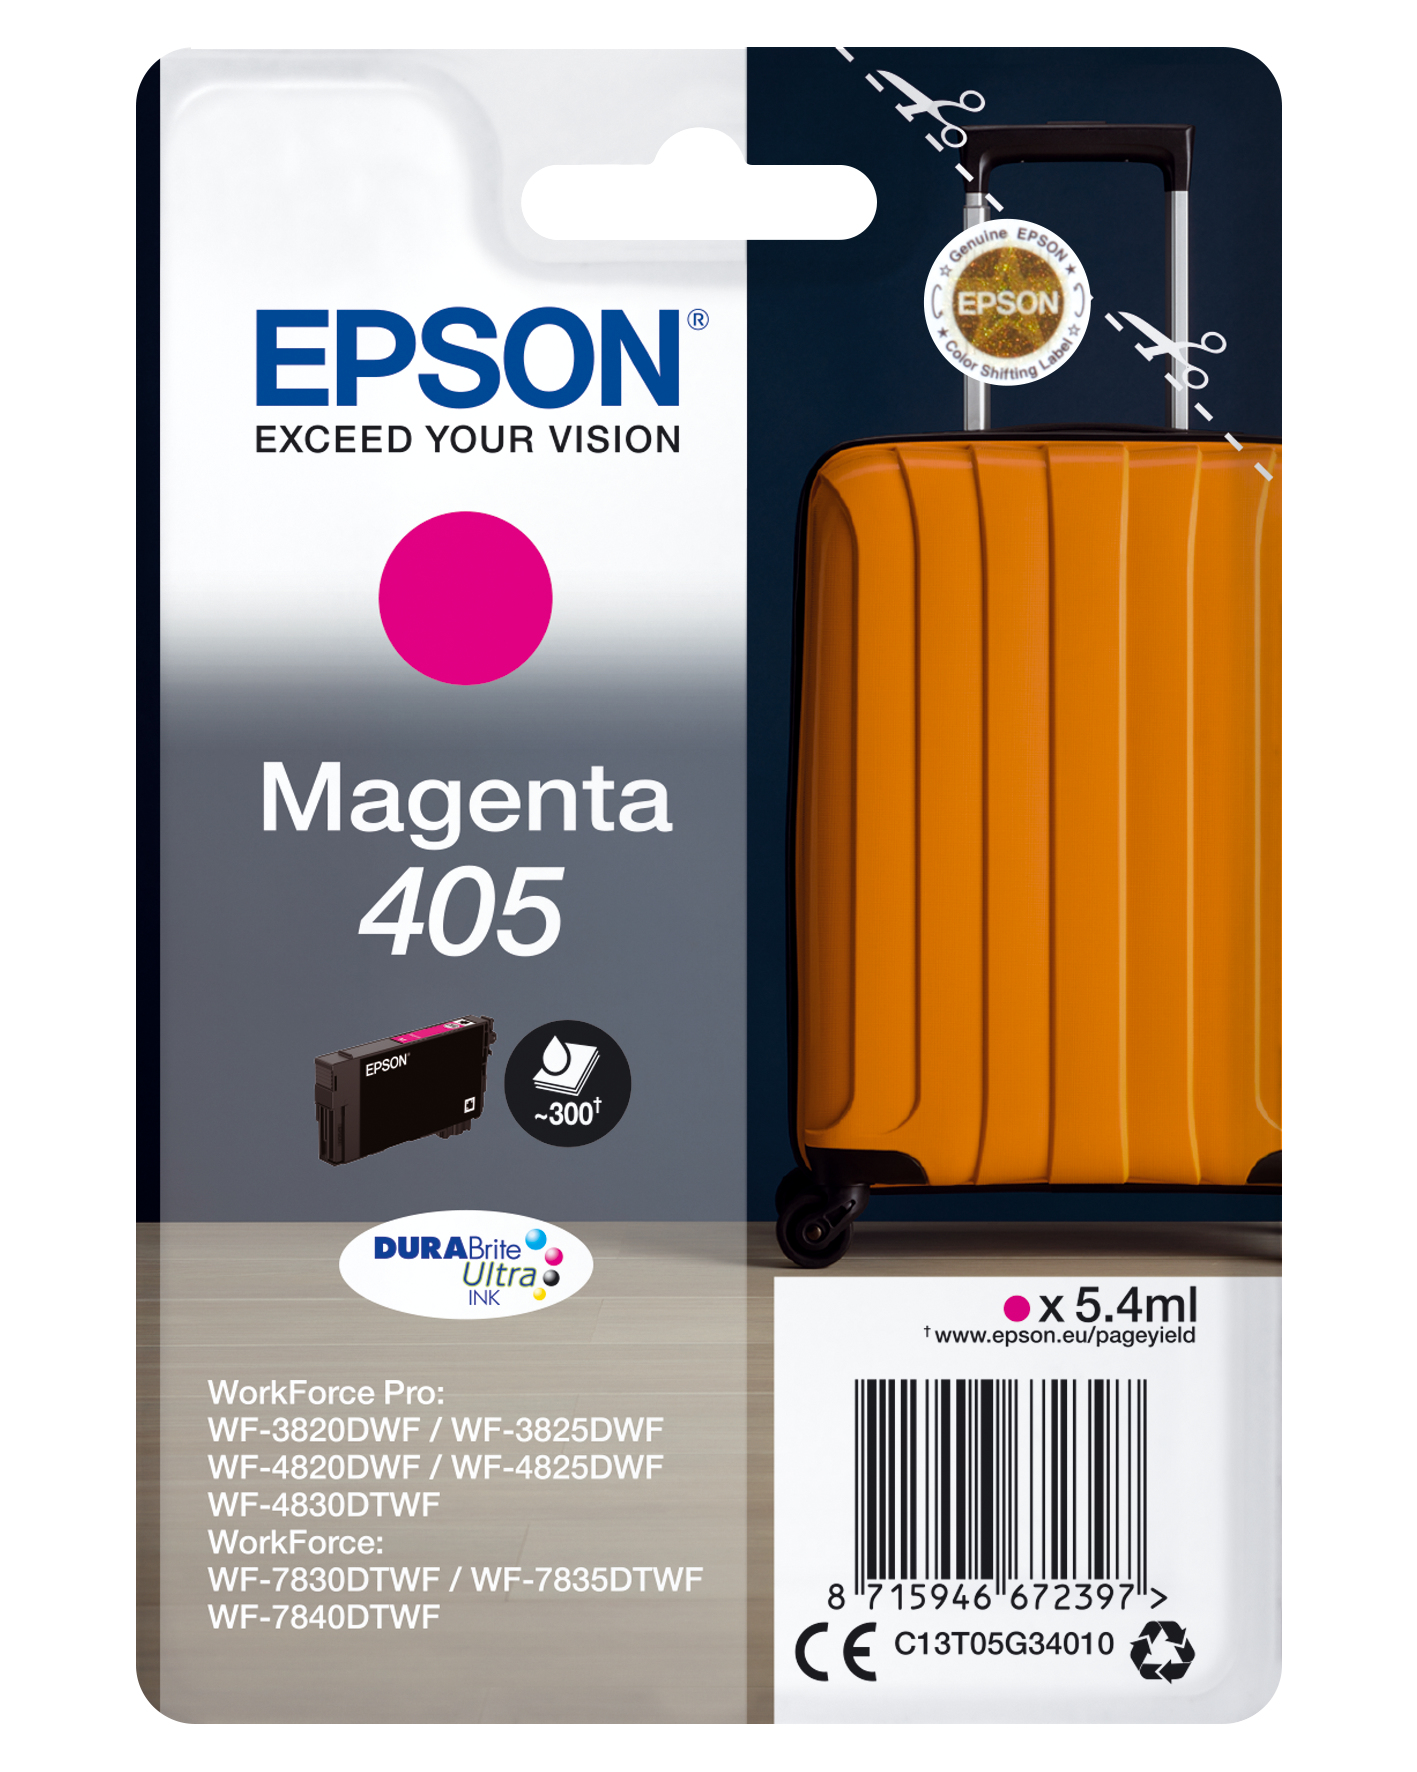 Epson Singlepack Magenta 405 DURABrite Ultra Ink - Standardertrag - Tinte auf Pigmentbasis - 5,4 ml - 1 Stück(e) - Einzelpackung